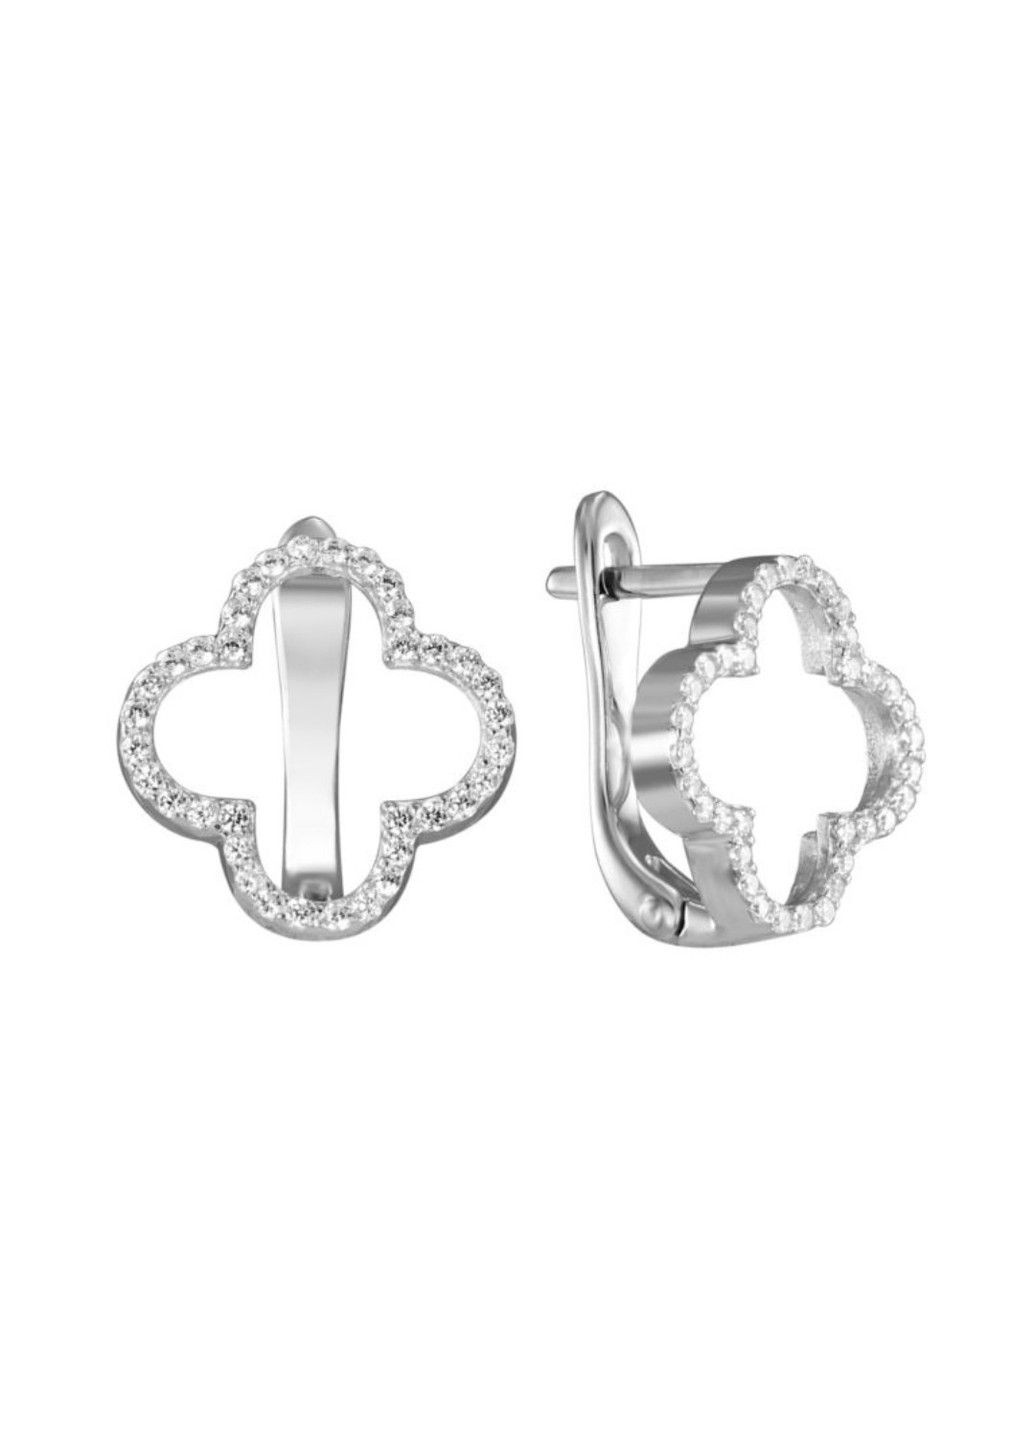 Срібні сережки Чотирилисник з камінням фіаніт UMAX (290049635)